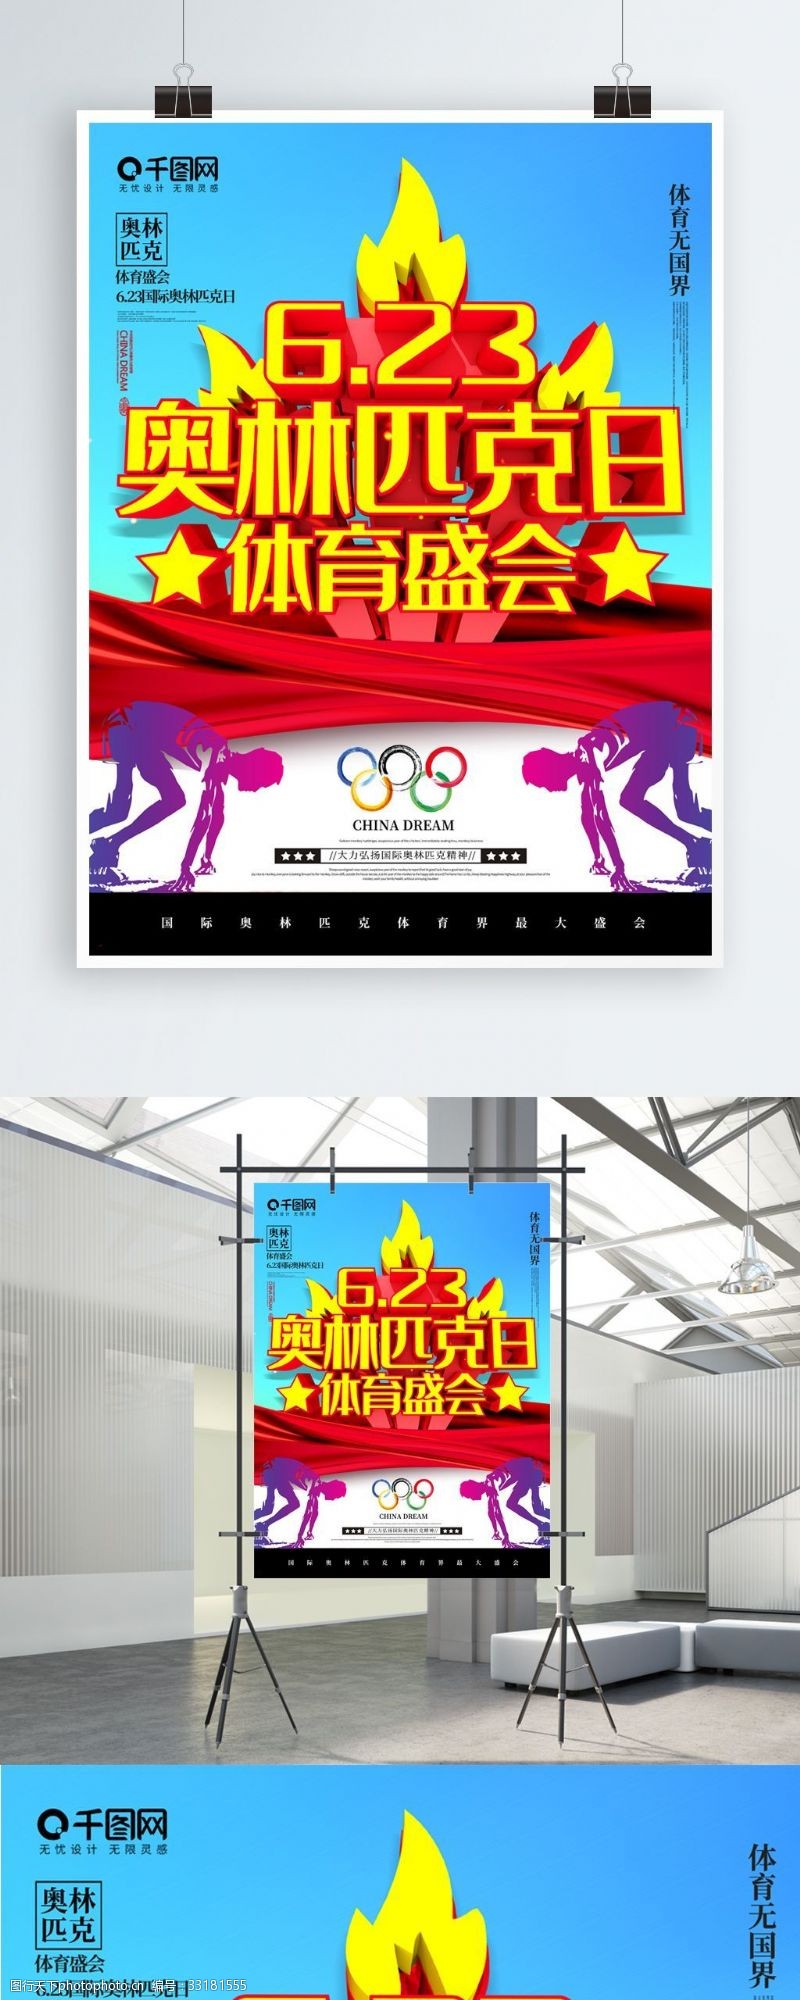 体育比赛大气C4D国际奥林匹克日体育盛会宣传海报